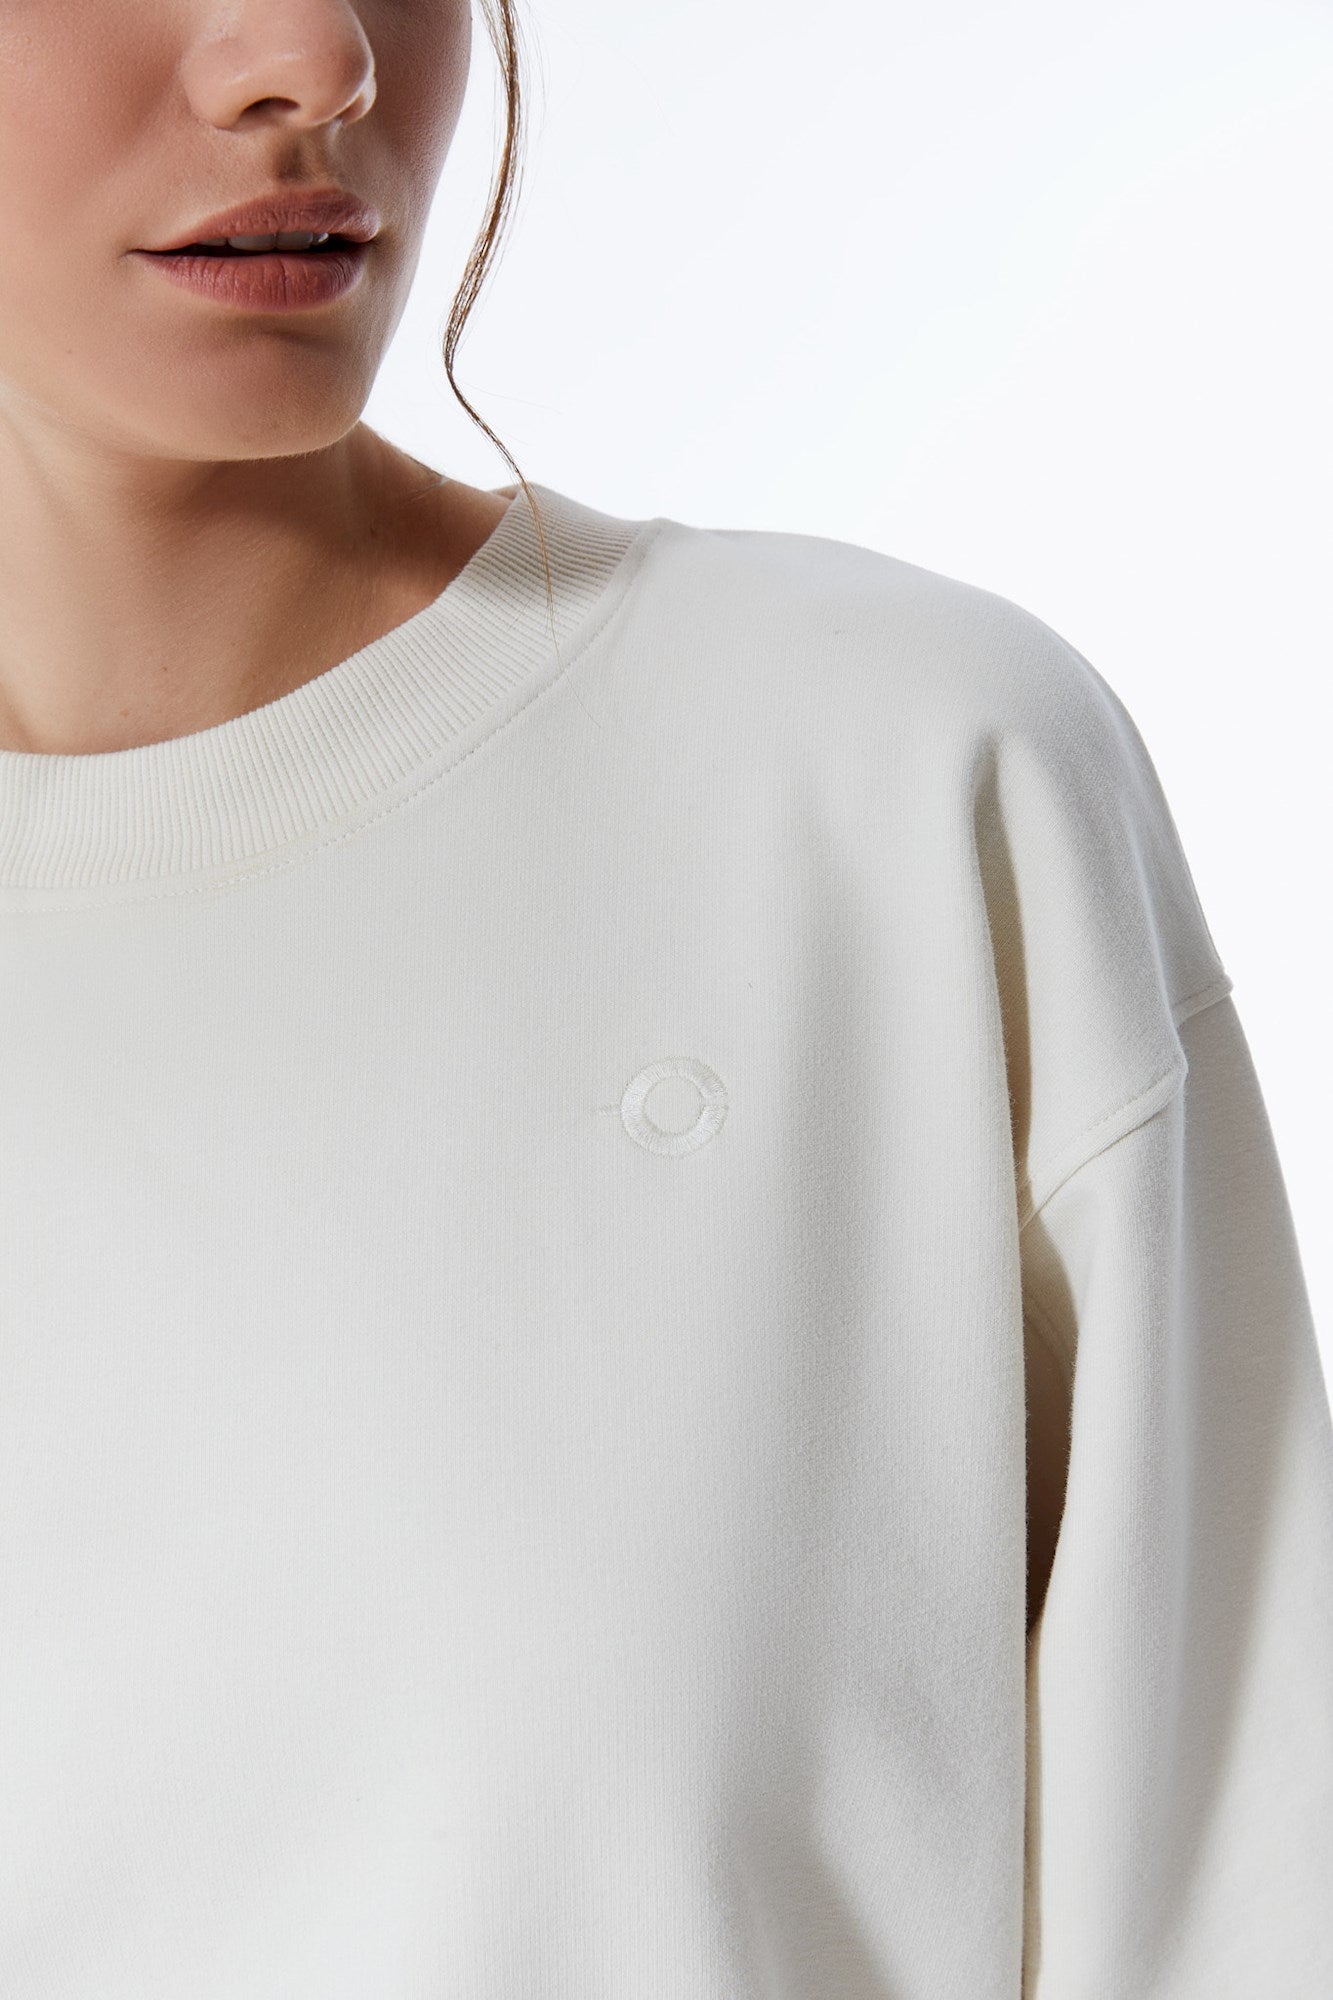 Elsa – Langarm-Sweatshirt mit Rundhalsausschnitt – gebrochenes Weiß